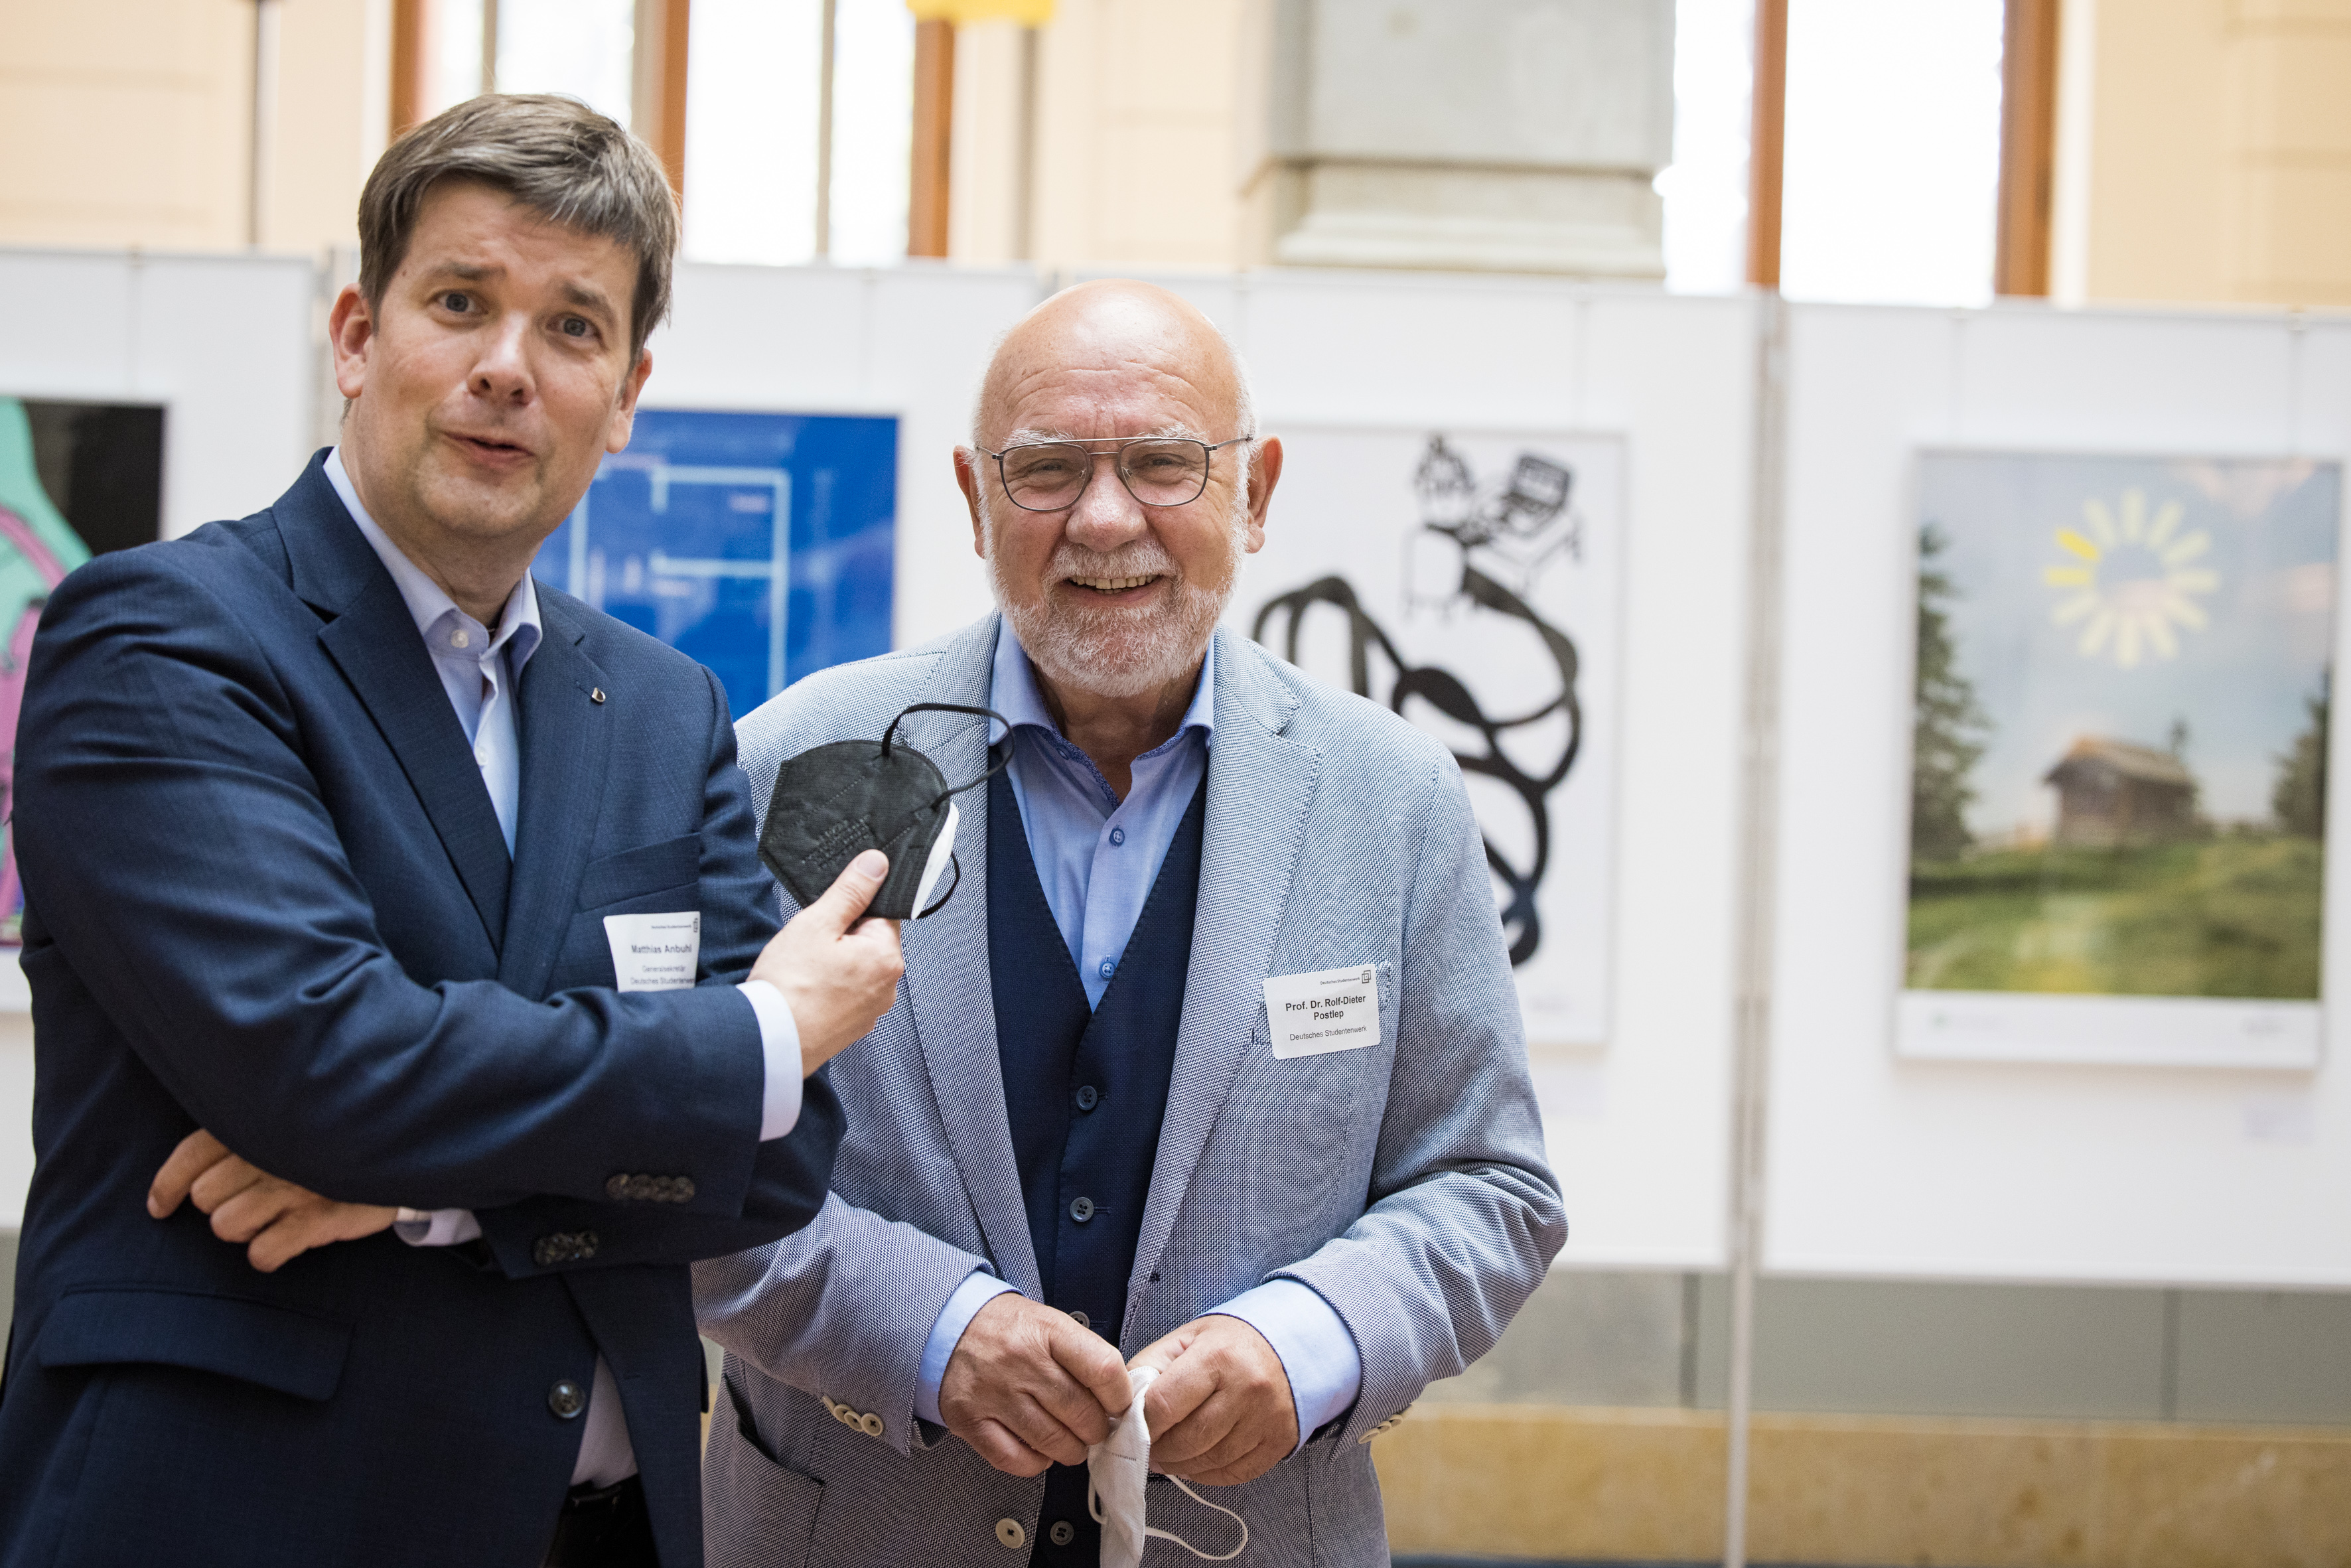 36. PW - Preisverleihung im Museum für Kommunikation, Matthias Anbuhl, Generalsekretär und Prof. Dr. Postlep, Präsident des Deutschen Studentenwerks 